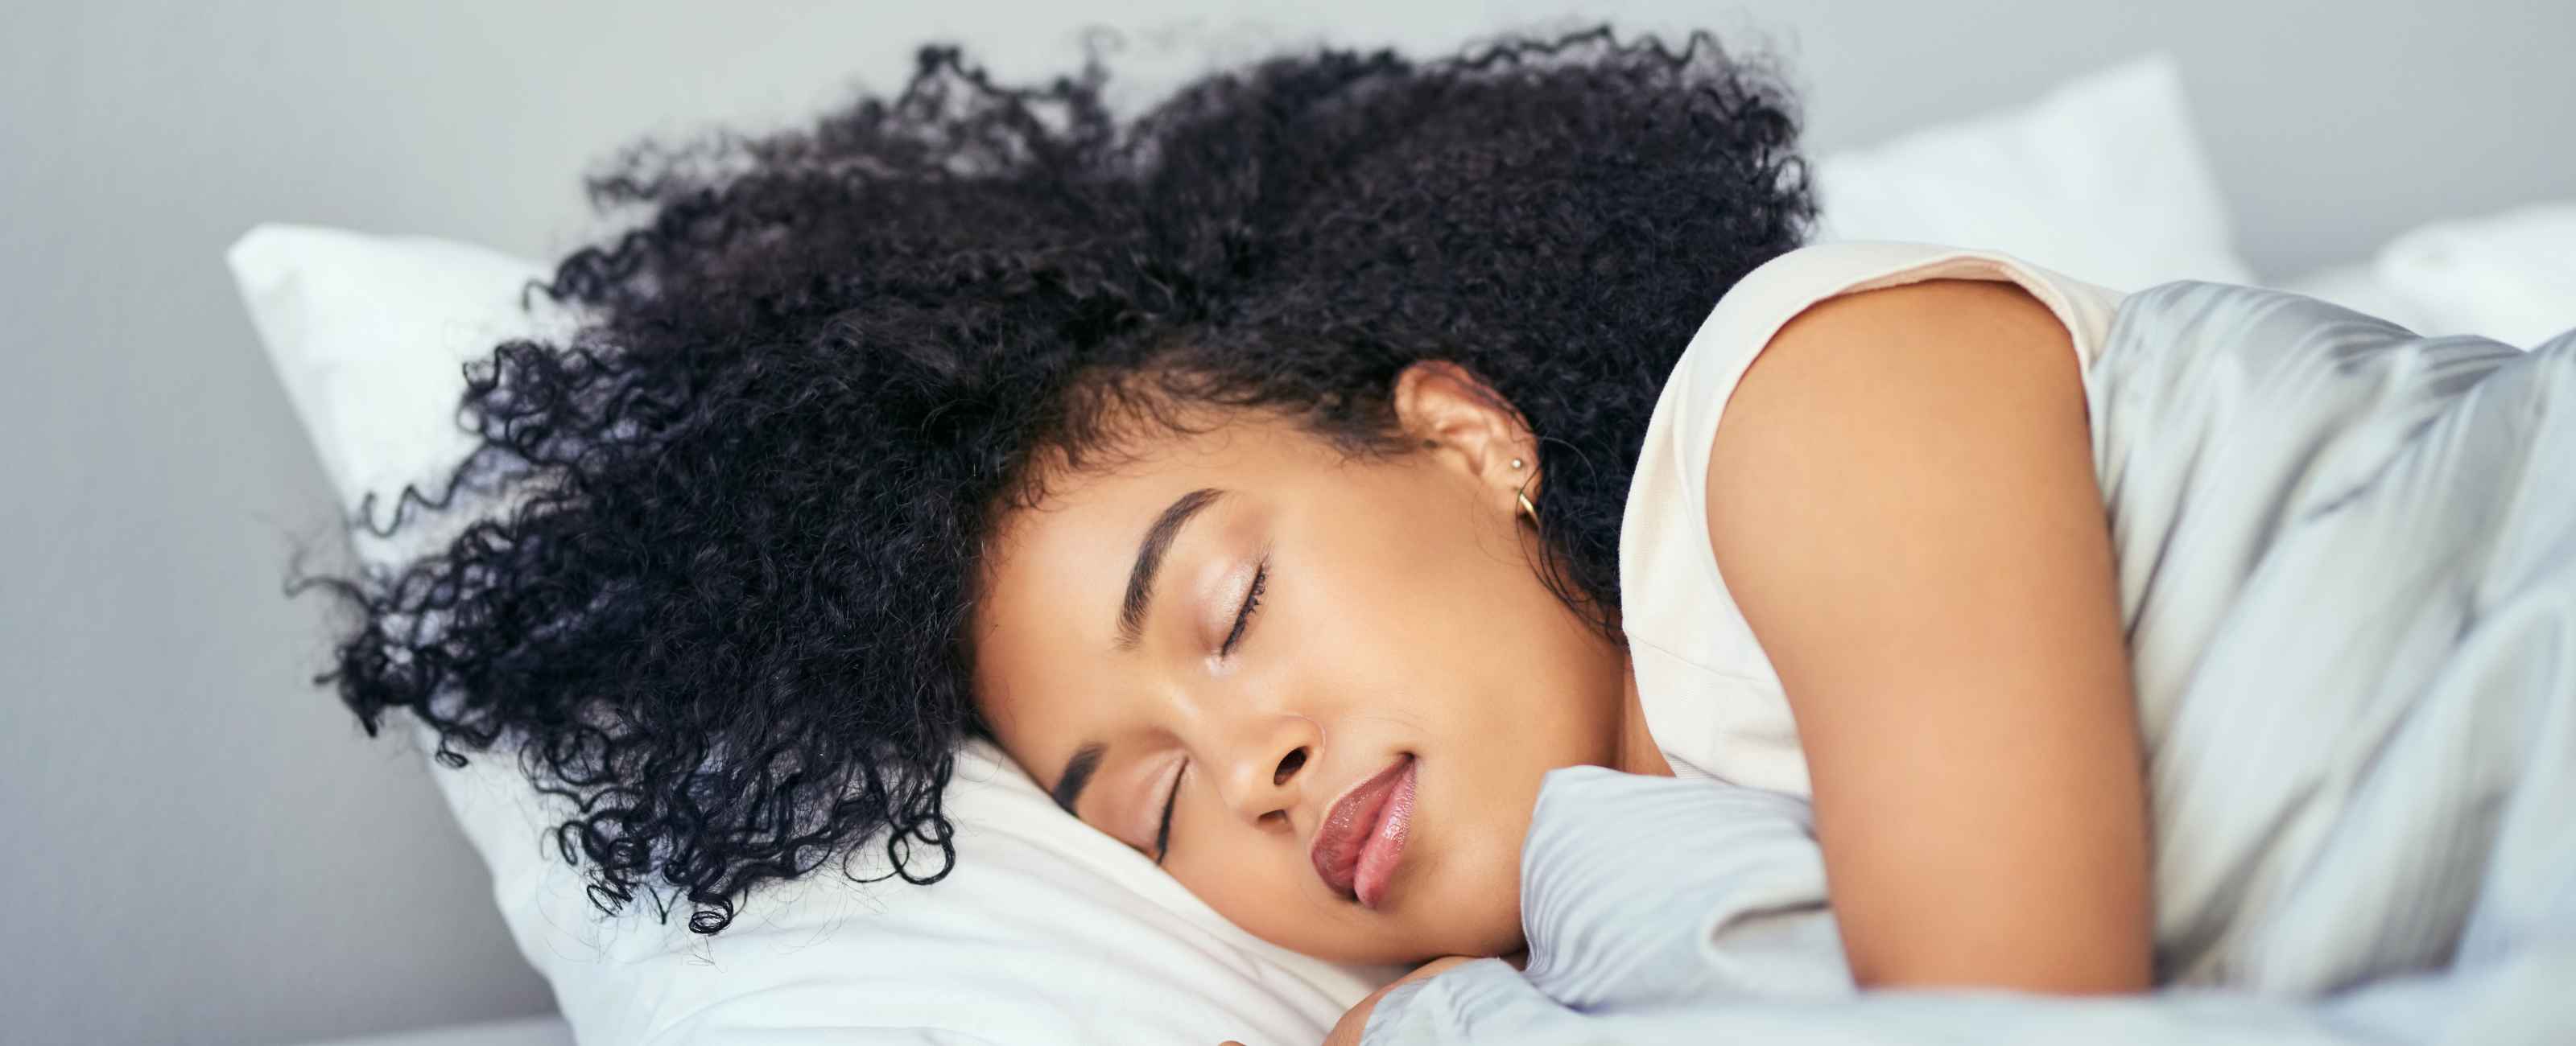 Découvrez l'importance de bien dormir pour avoir une belle peau !